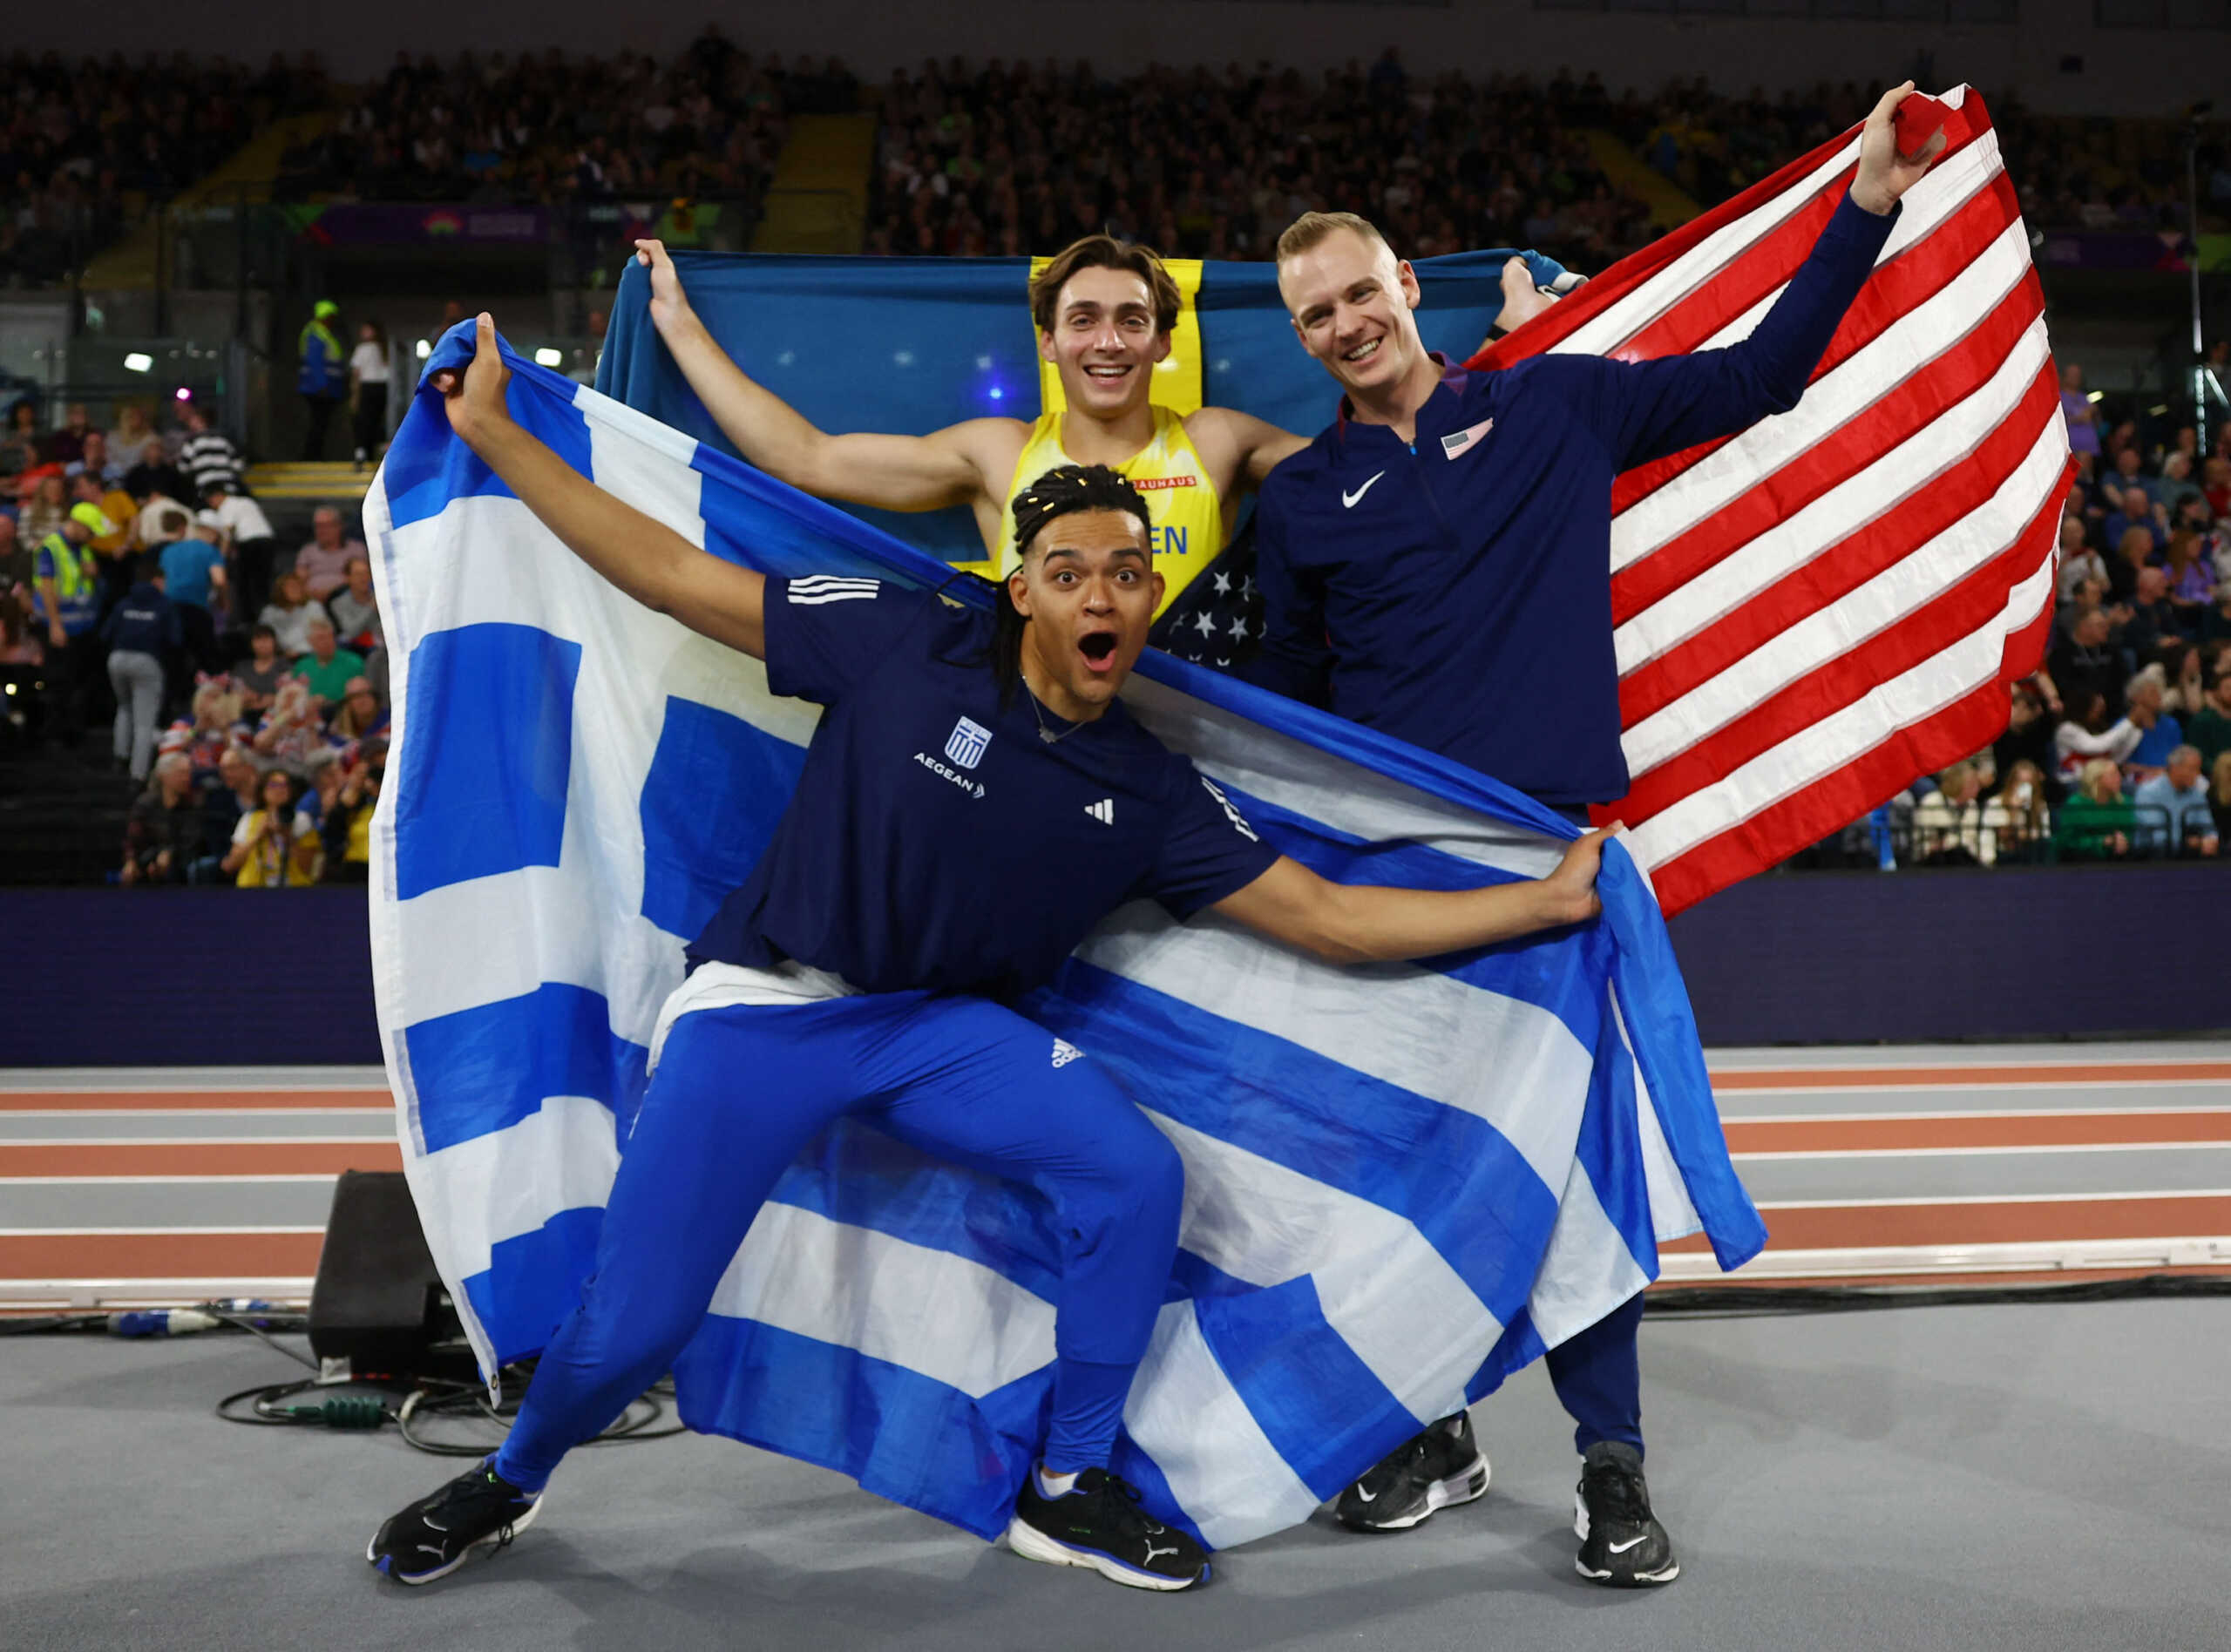 Ο Εμμανουήλ Καραλής κατέκτησε το χάλκινο μετάλλιο στο επί κοντώ του παγκοσμίου πρωταθλήματος κλειστού στίβου της Γλασκώβης